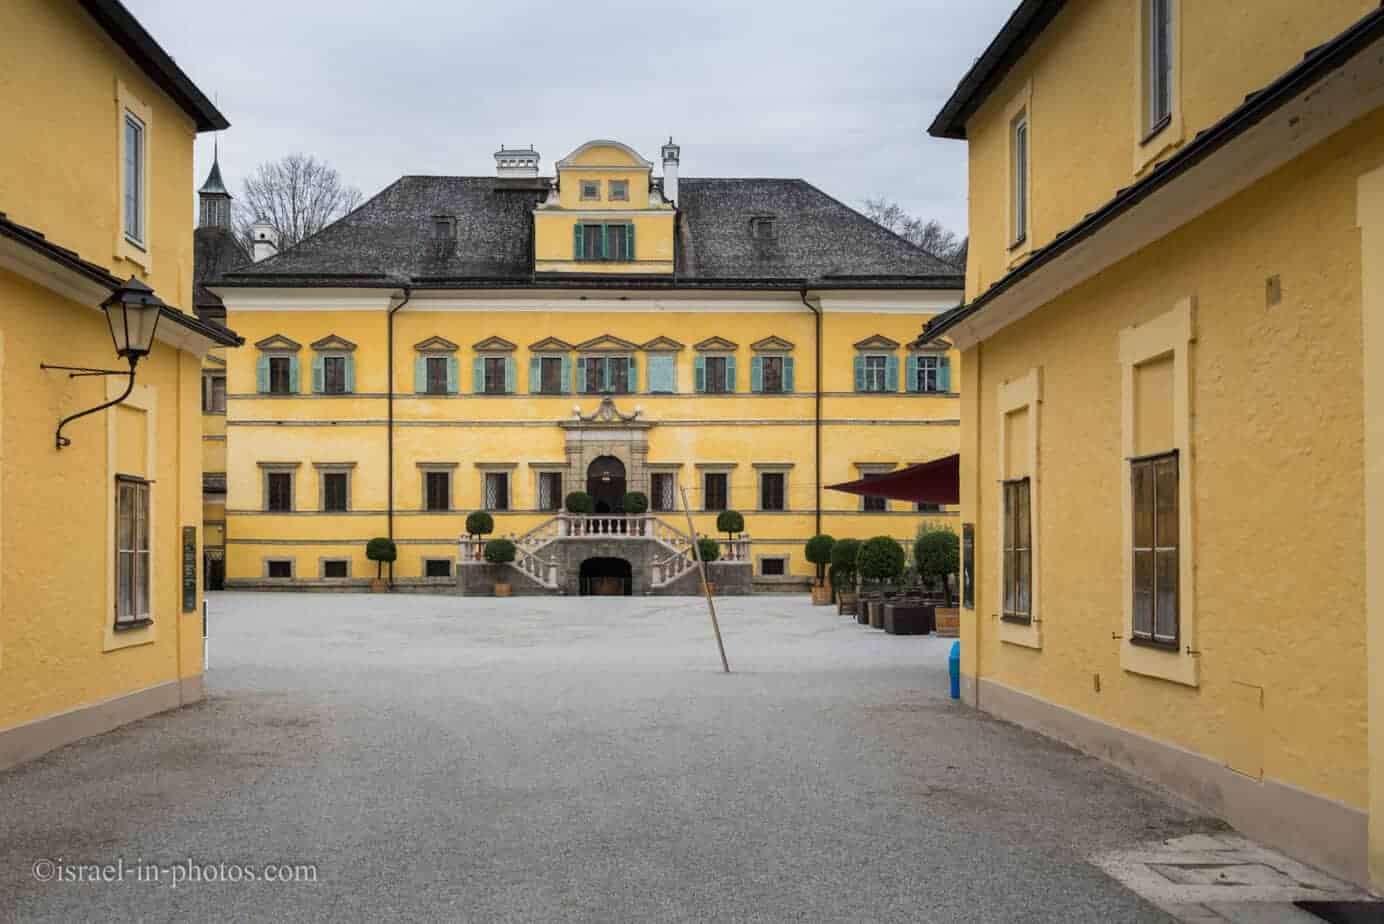 Visiting Schloss Hellbrunn near Salzburg, Austria